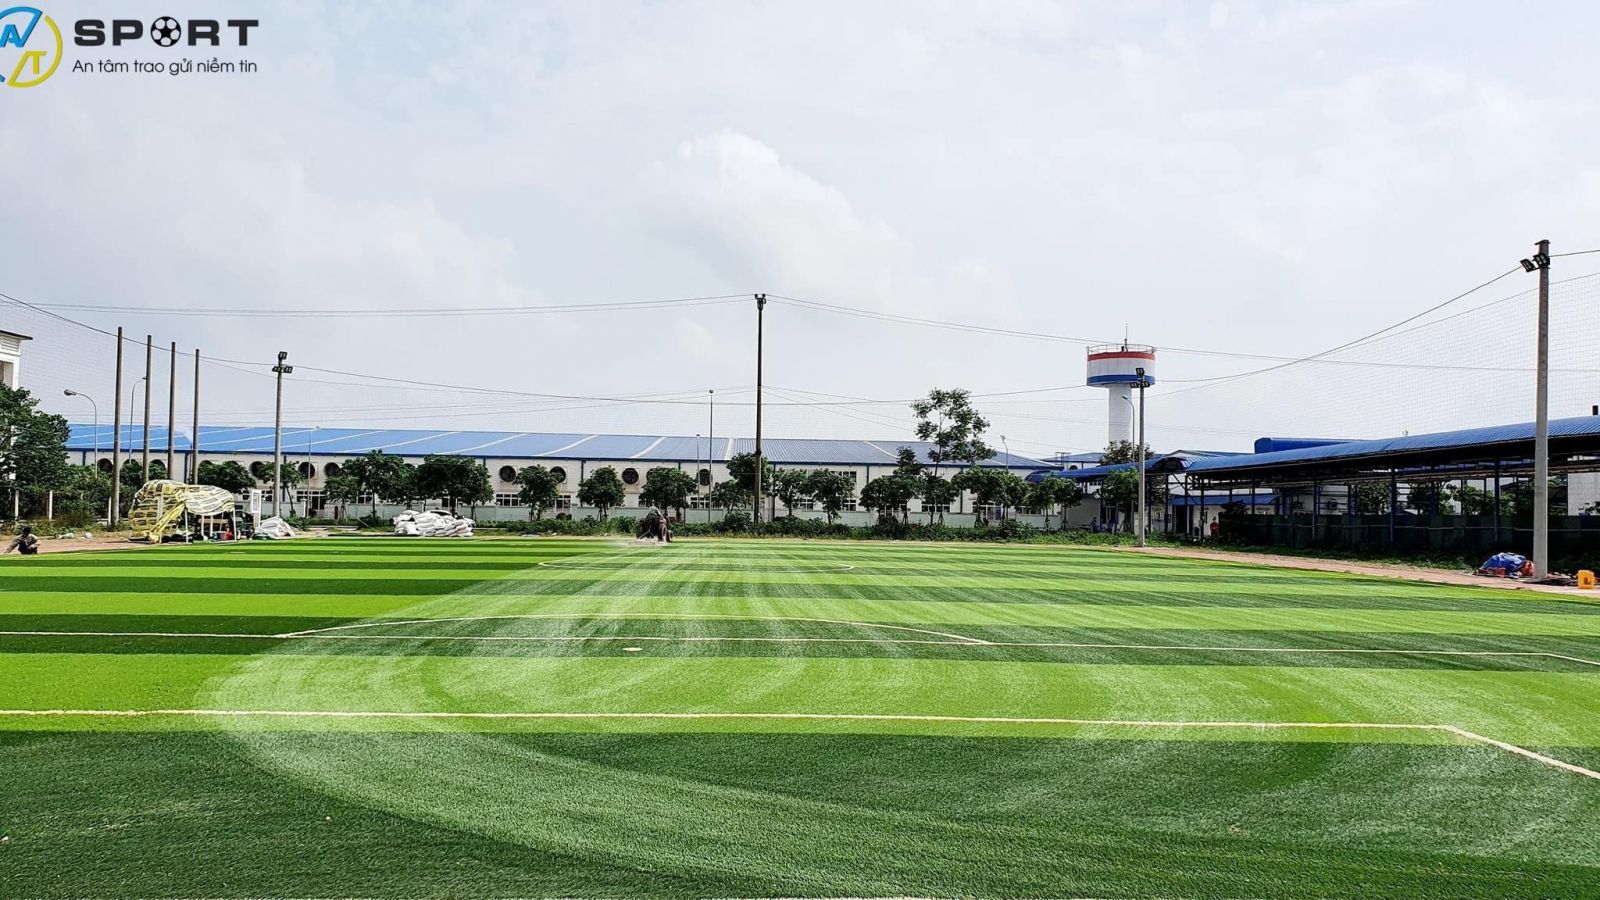 Thi công cỏ nhân tạo sân bóng huyện Tuy Phước, Bình Định